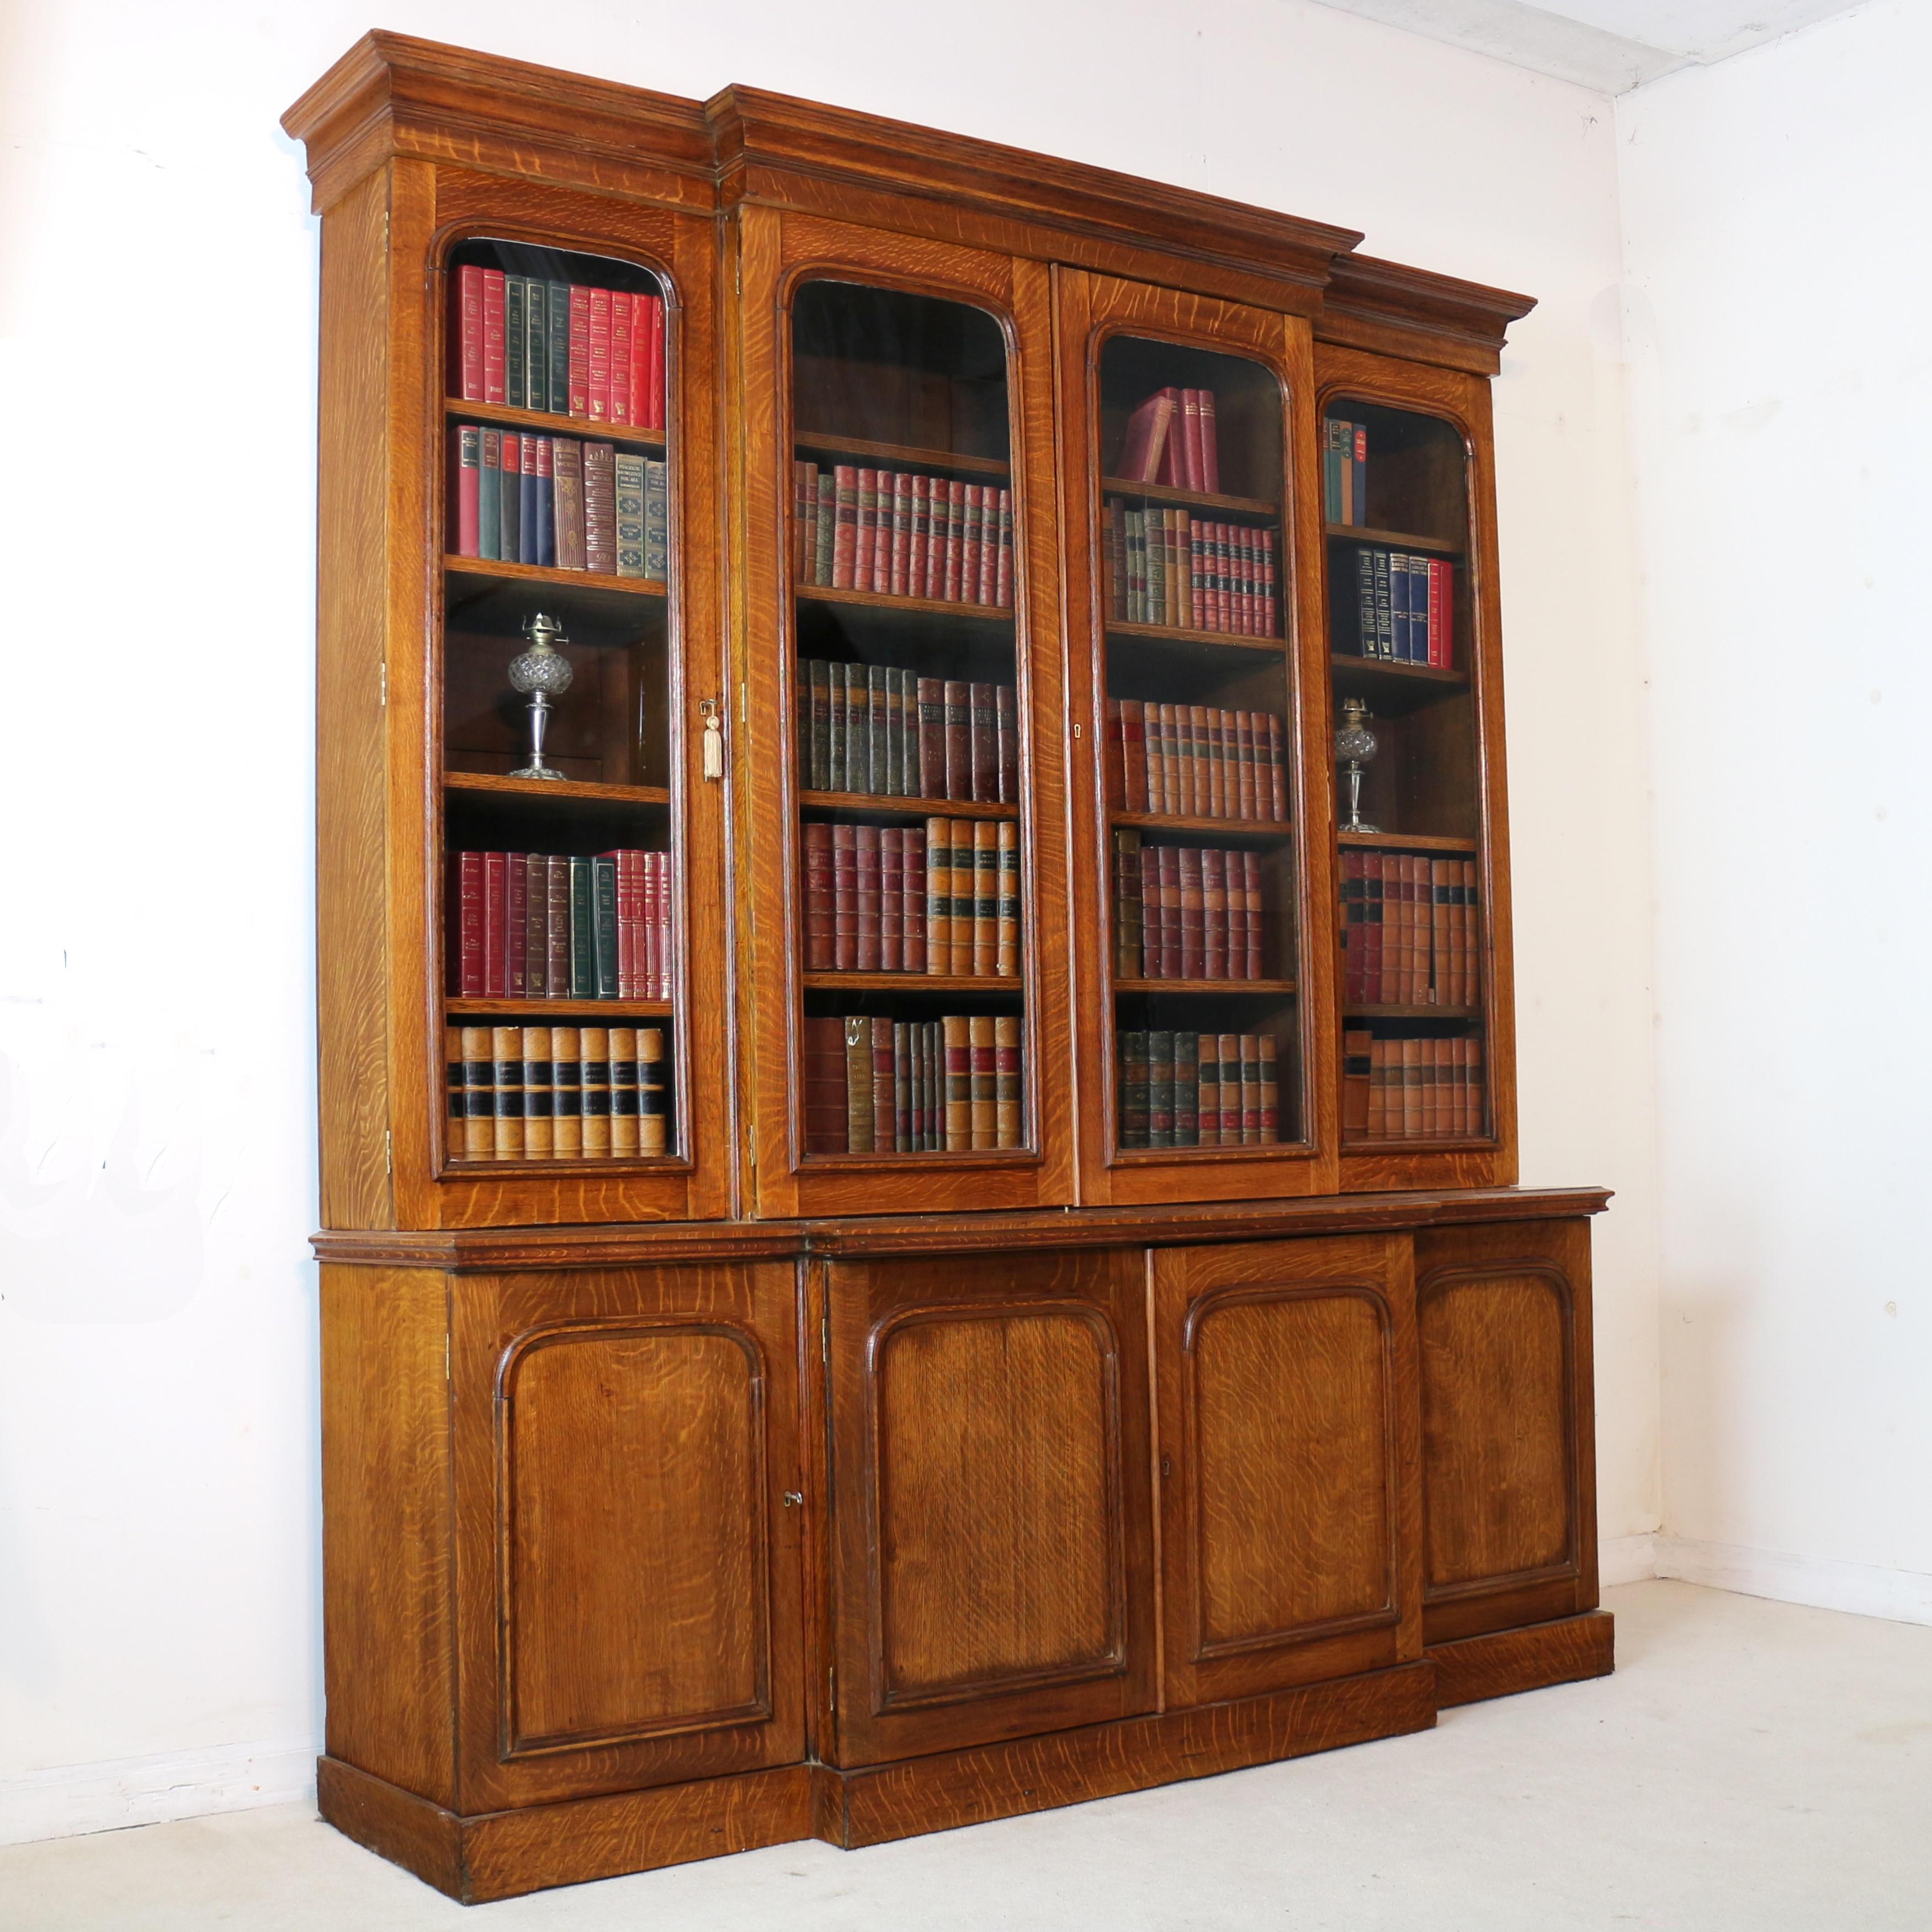 Une impressionnante bibliothèque ou armoire-bibliothèque à quatre portes de style William IV/ début Victorien. Il est rare de trouver une bibliothèque de cette taille en chêne scié sur quartier doré, qui présente l'attrayant 